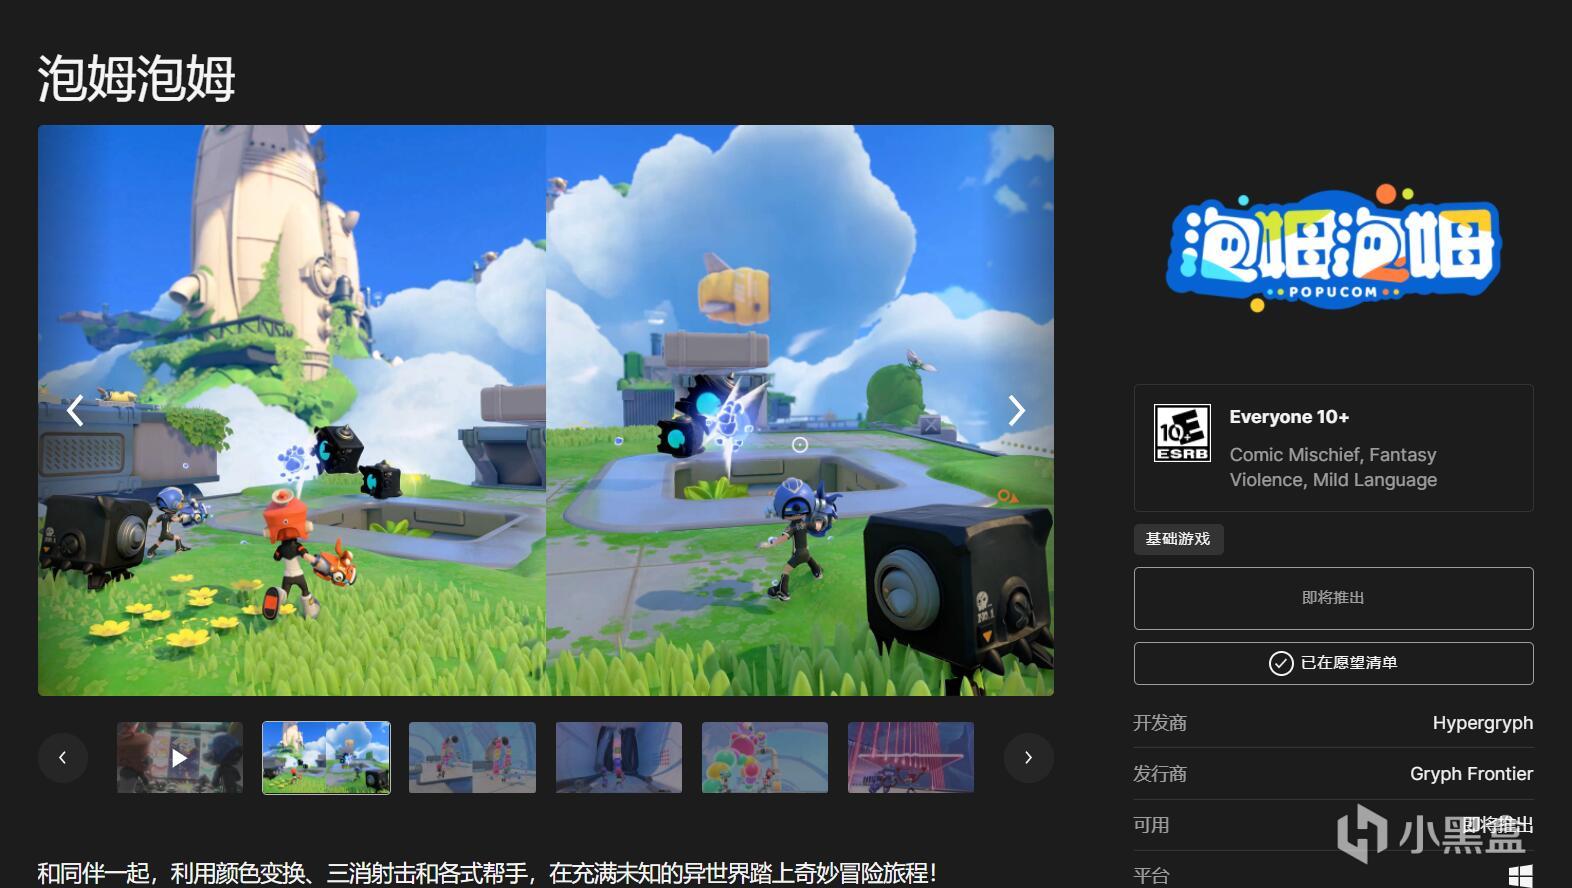 鹰角网络首款PC游戏《泡姆泡姆》目前已经出现在Steam和EPIC商店-第3张